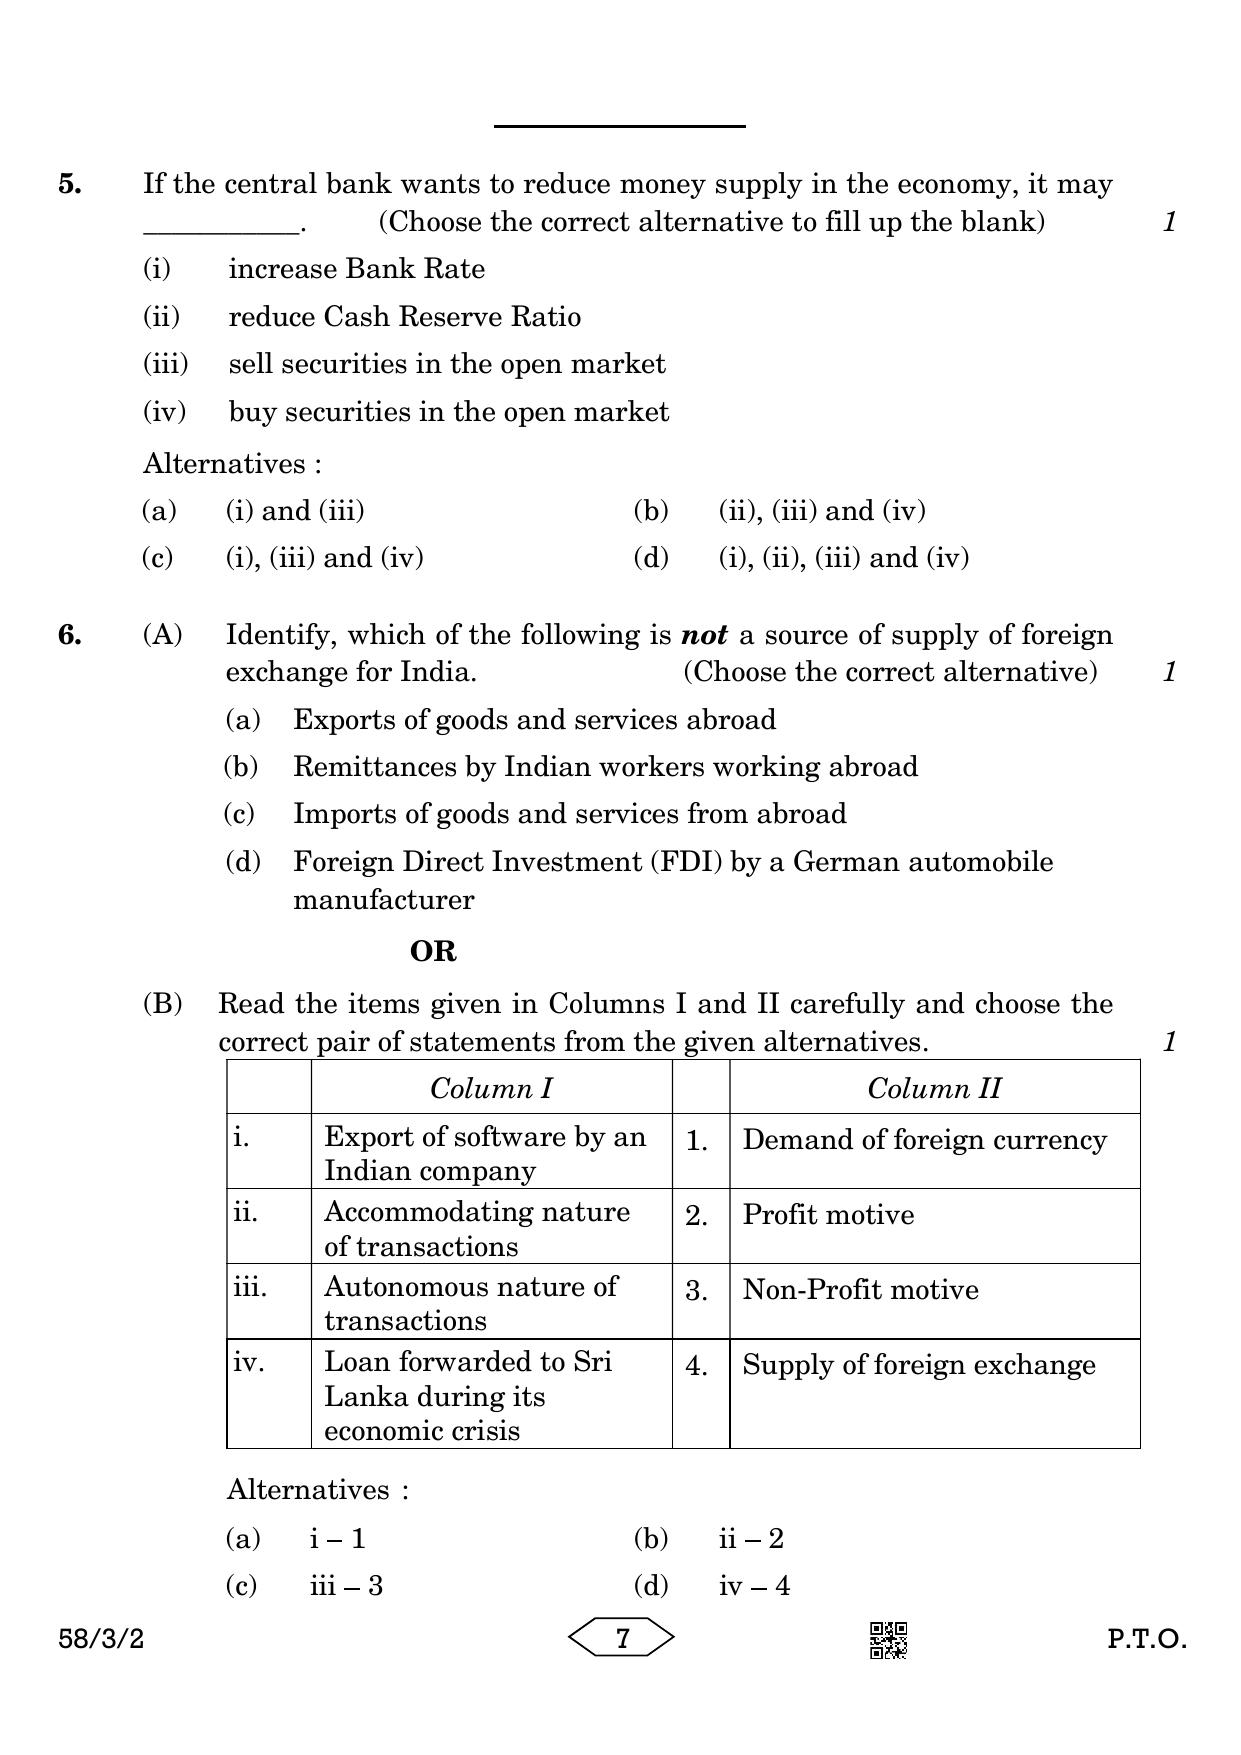 CBSE Class 12 58-3-2 Economics 2023 Question Paper - Page 7